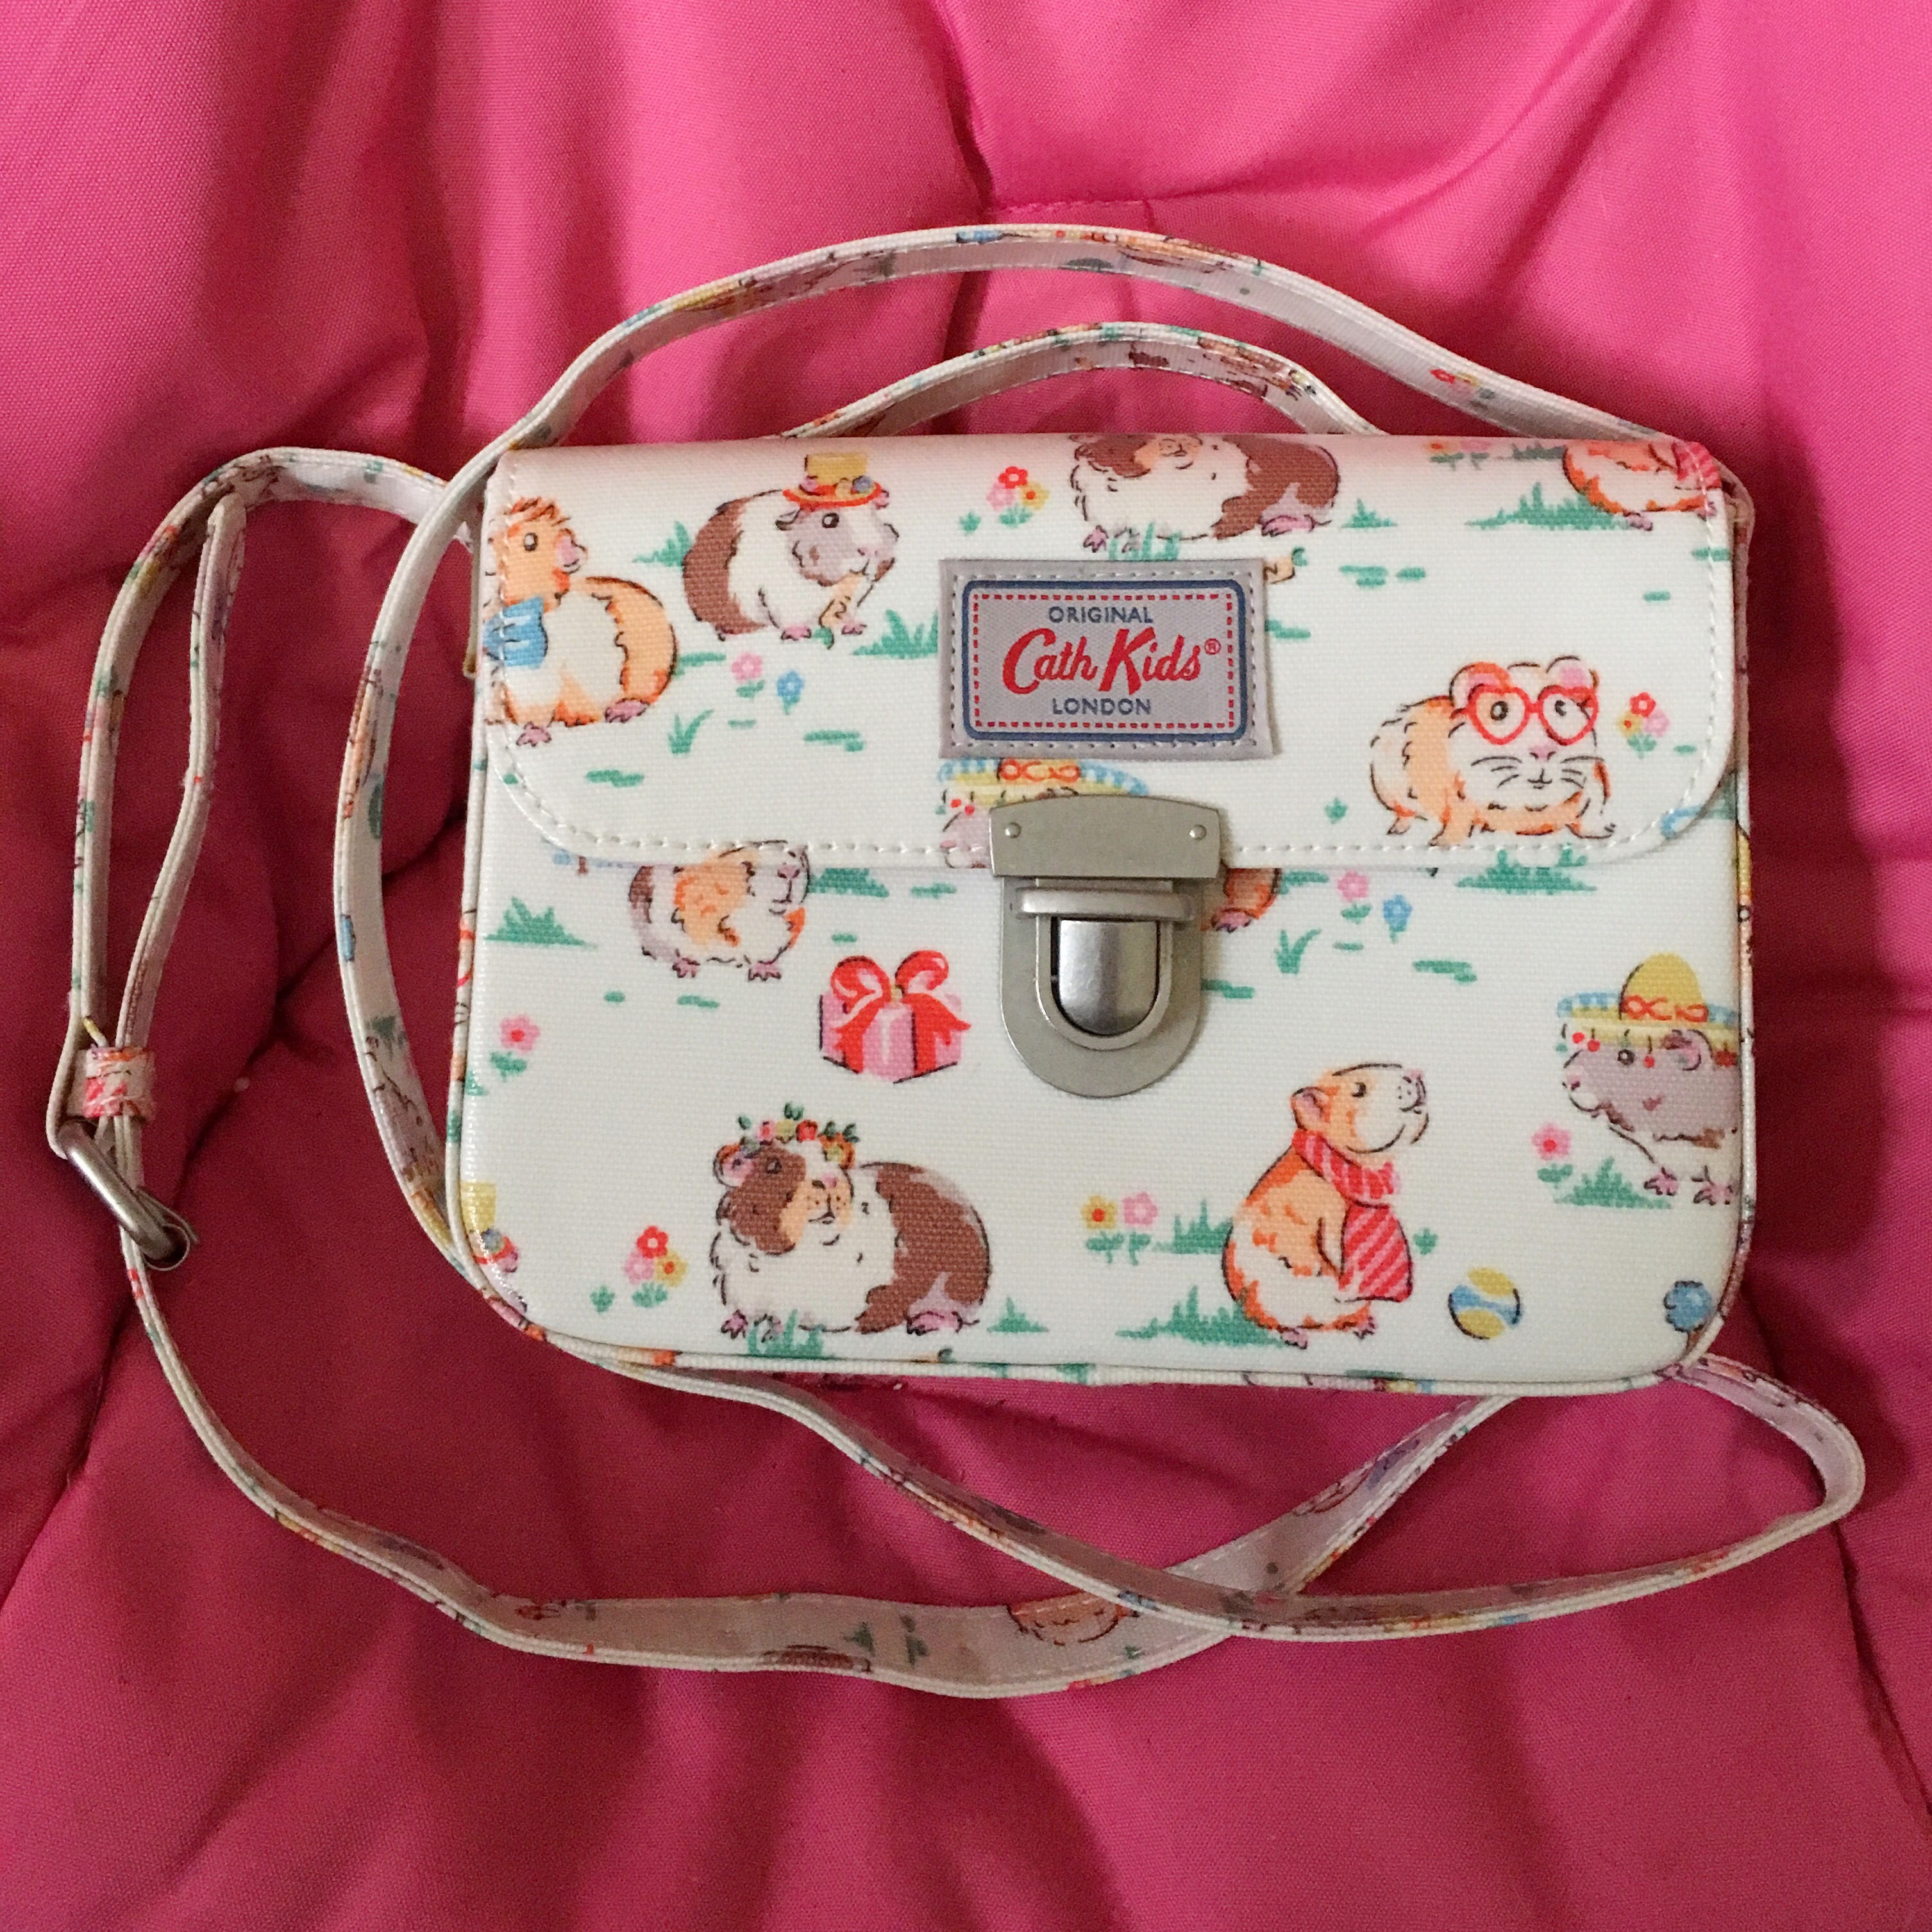 Cath Kidston Bags & Handbags for Women for sale | eBay